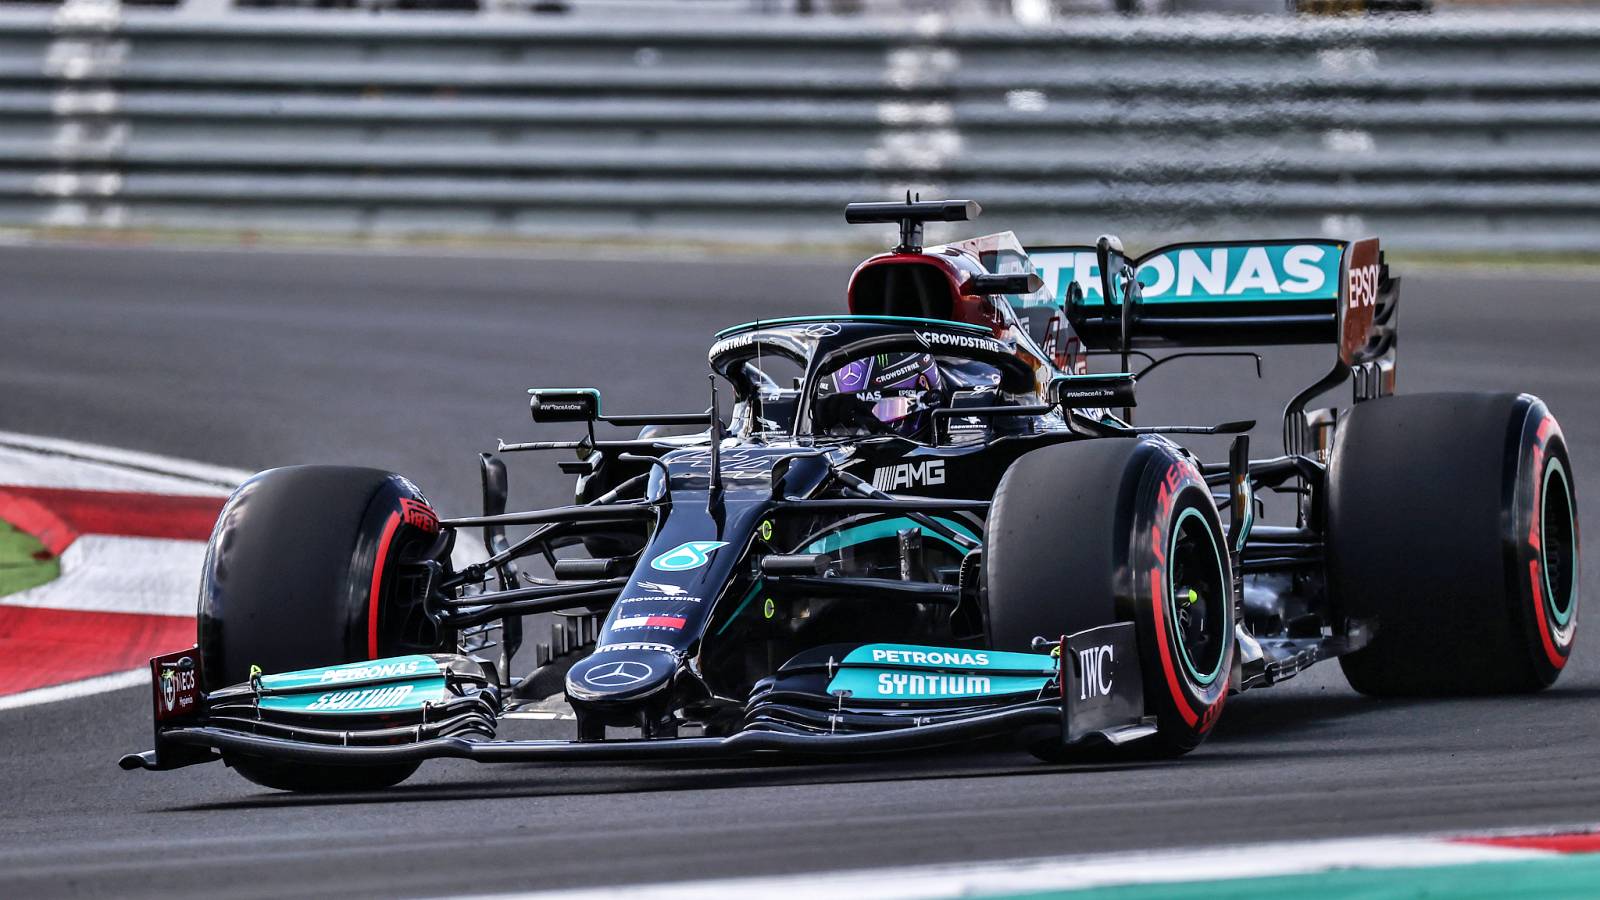 Formel 1 Lewis Hamilton förbluffar officiella meddelanden SISTA MINUTEN Mercedes Kina